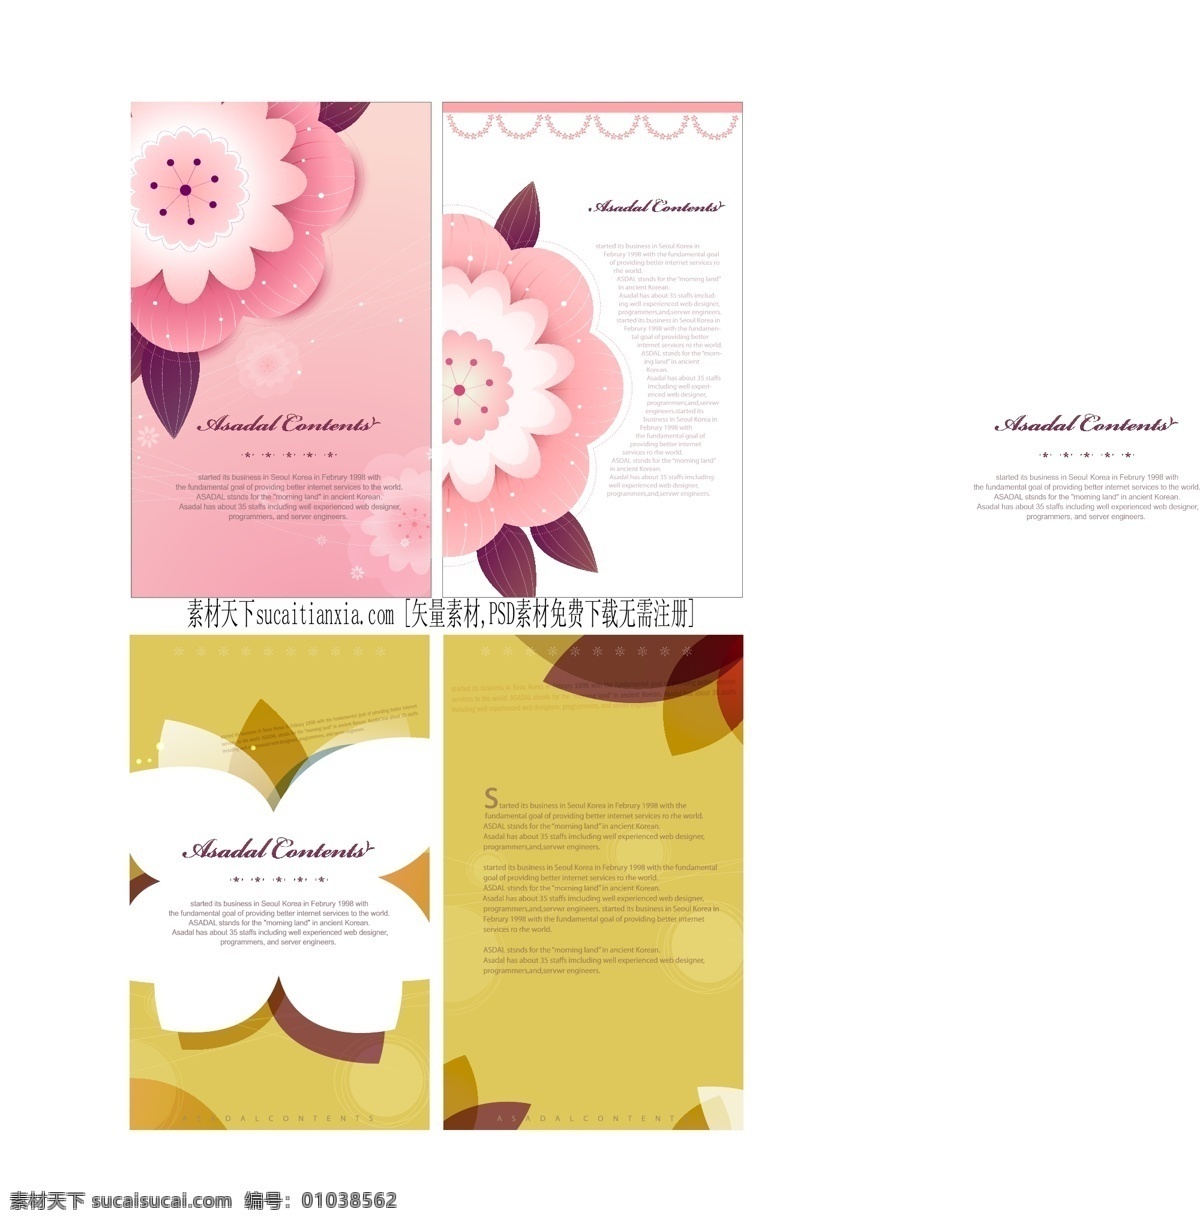 简约 画册 粉色画册 国外版式设计 国外简约画册 红色画册 花朵画册 矢量图